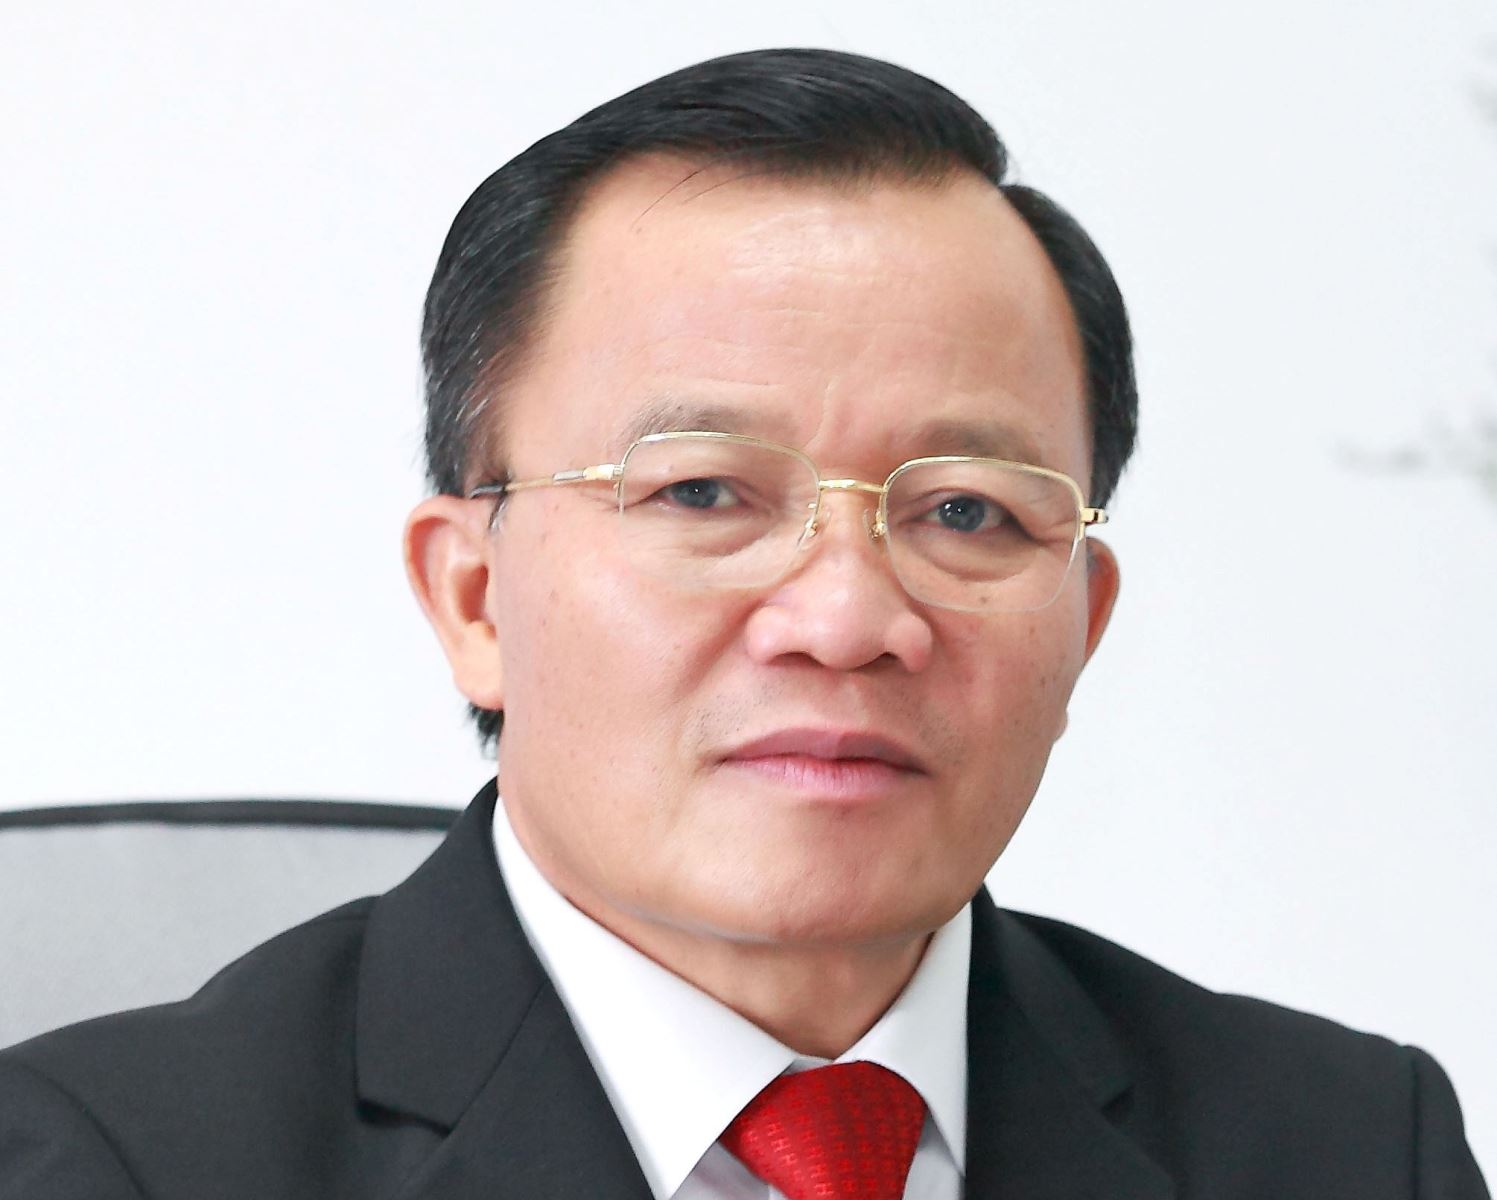 Nguyên Duc Thuân, président de l’Association vietnamienne du cuir, de la chaussure et des sacs à main (LEFASO).